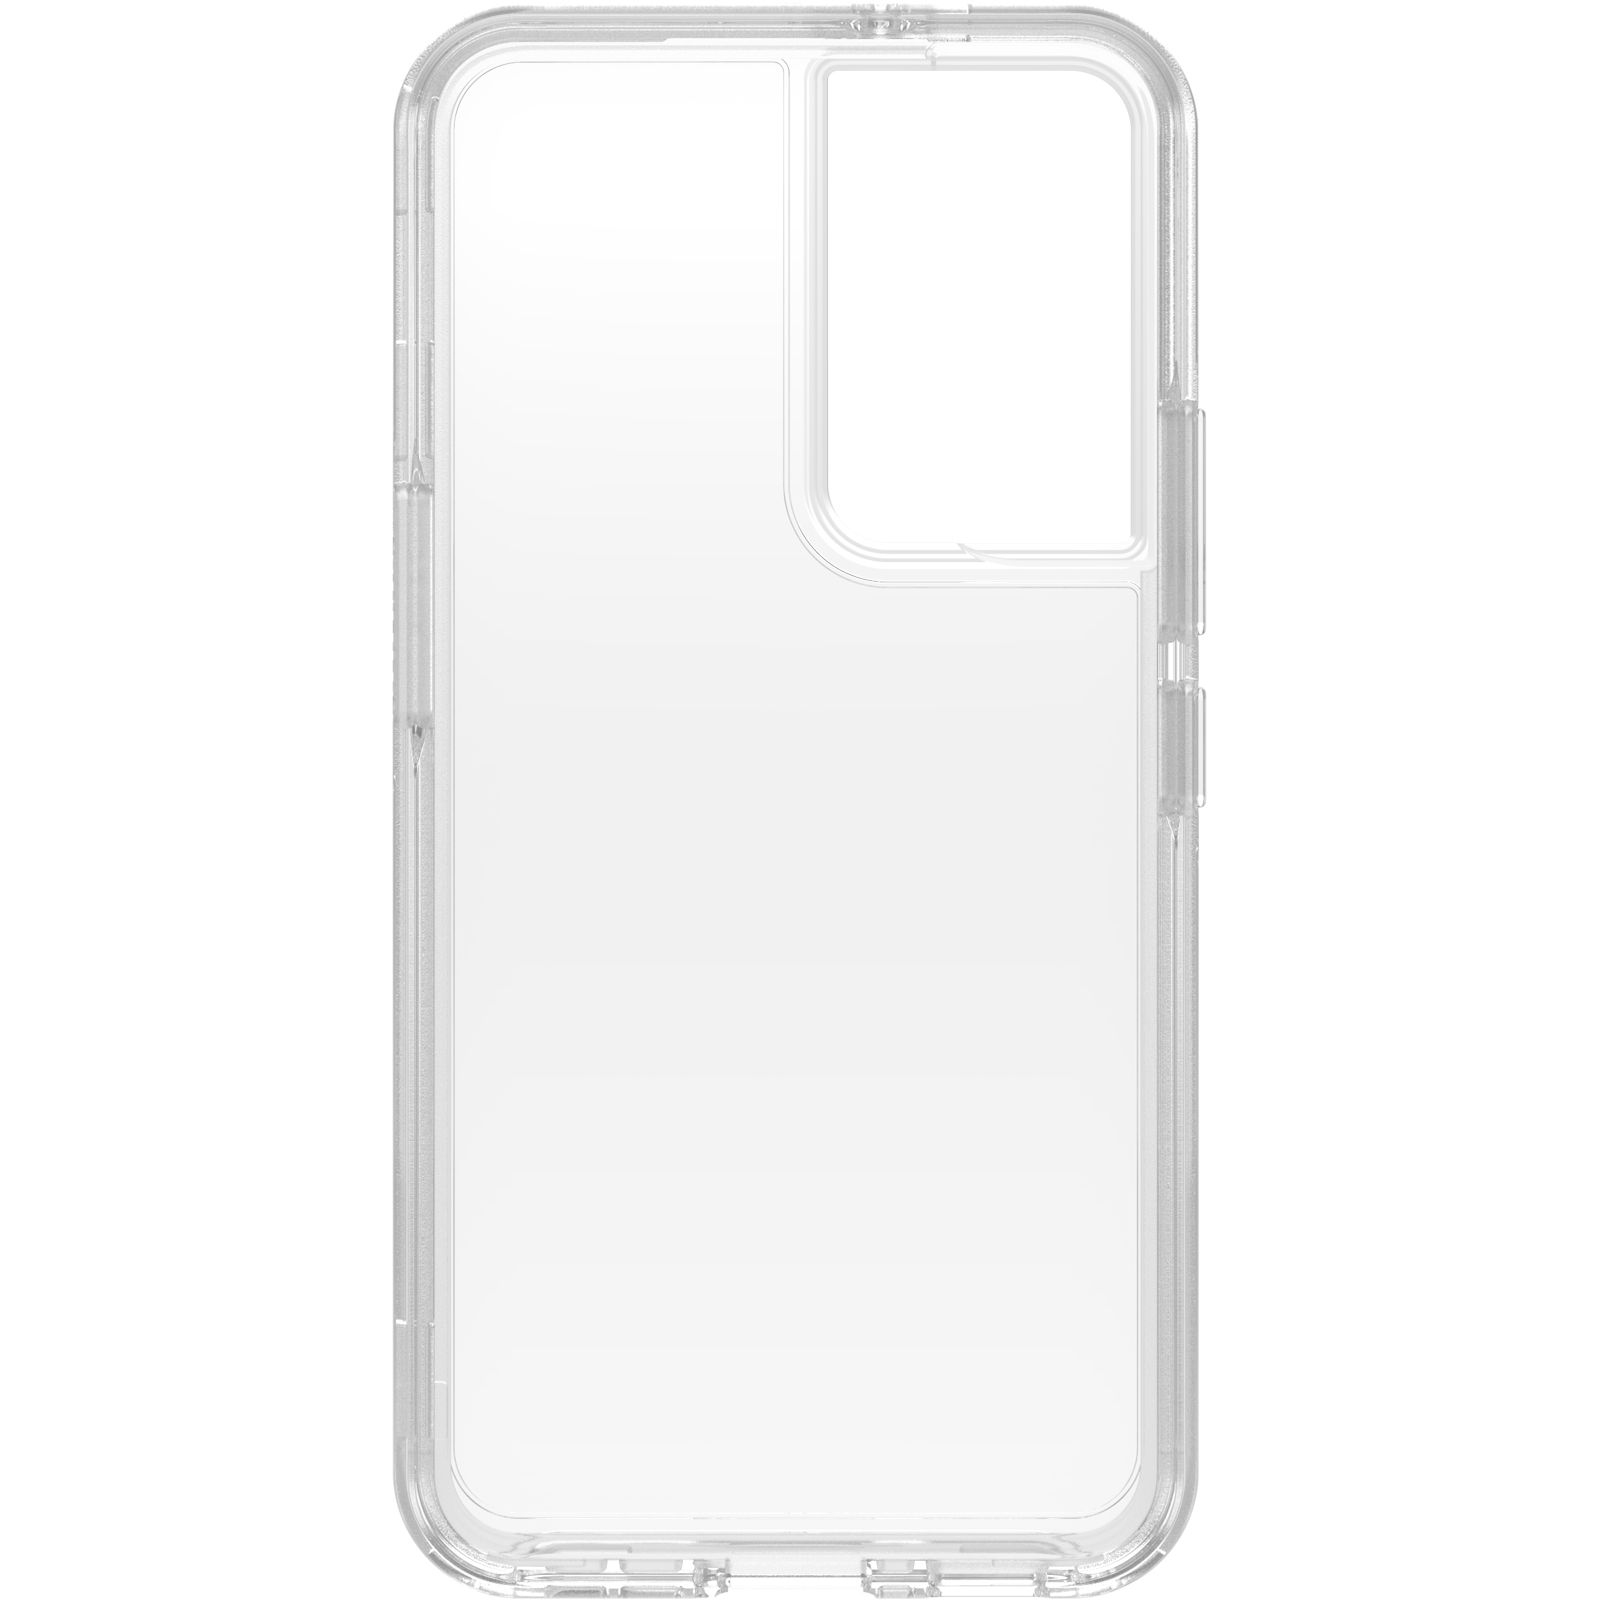 เคส Otterbox รุ่น Symmetry Clear - Samsung Galaxy S22 - สี Ant Clear